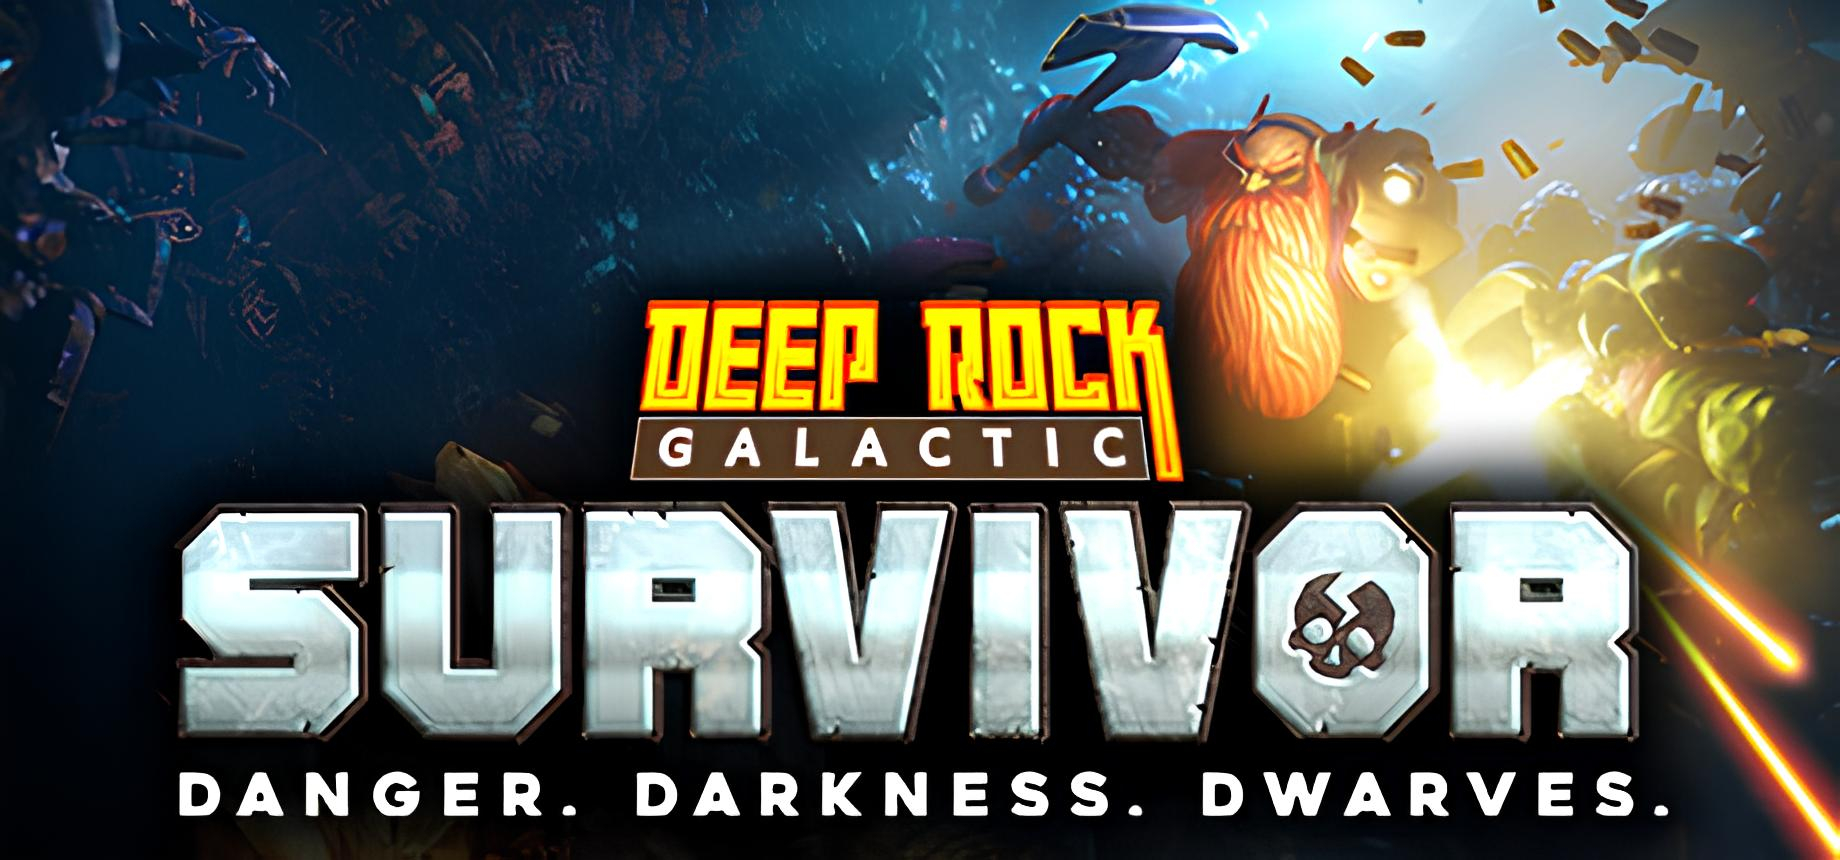 Обложка игры Deep Rock Galactic: Survivor